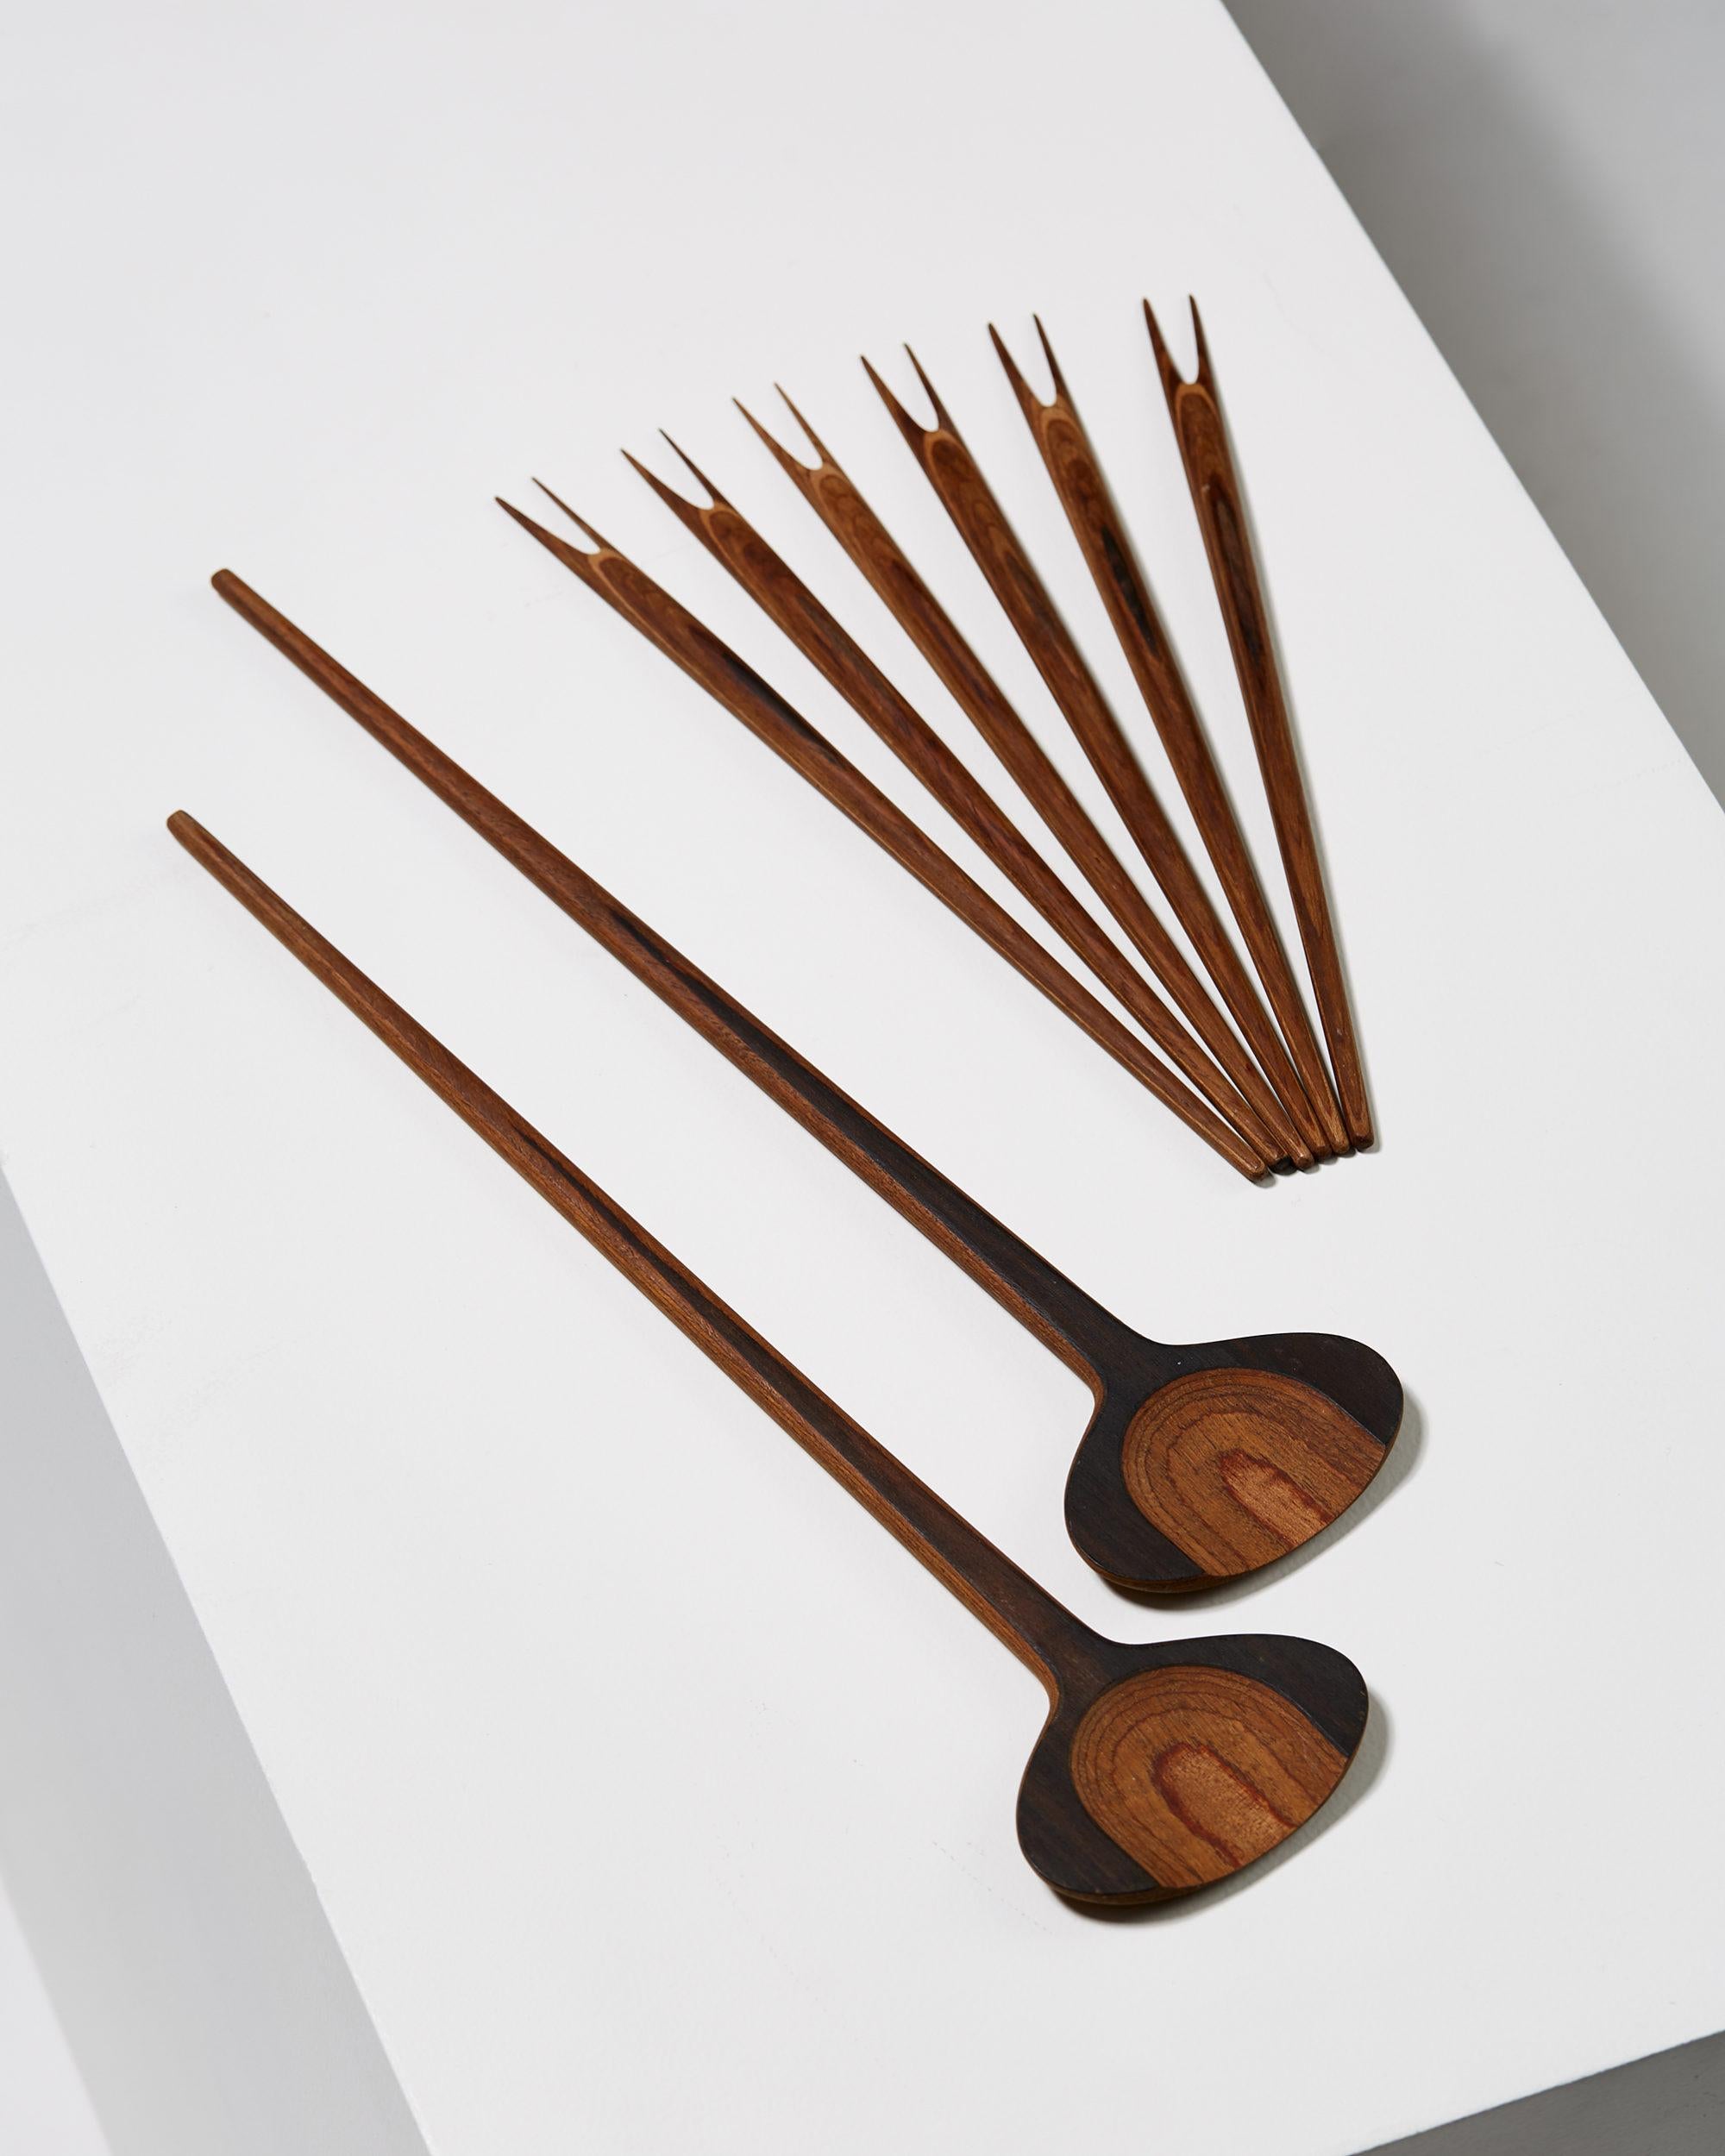 Set di posate da portata disegnato da Tapio Wirkkala, Finlandia, anni Cinquanta.

Un set di cucchiai da portata e forchette da olive.

Misure: Forchette:
L 26 cm/ 10 1/8